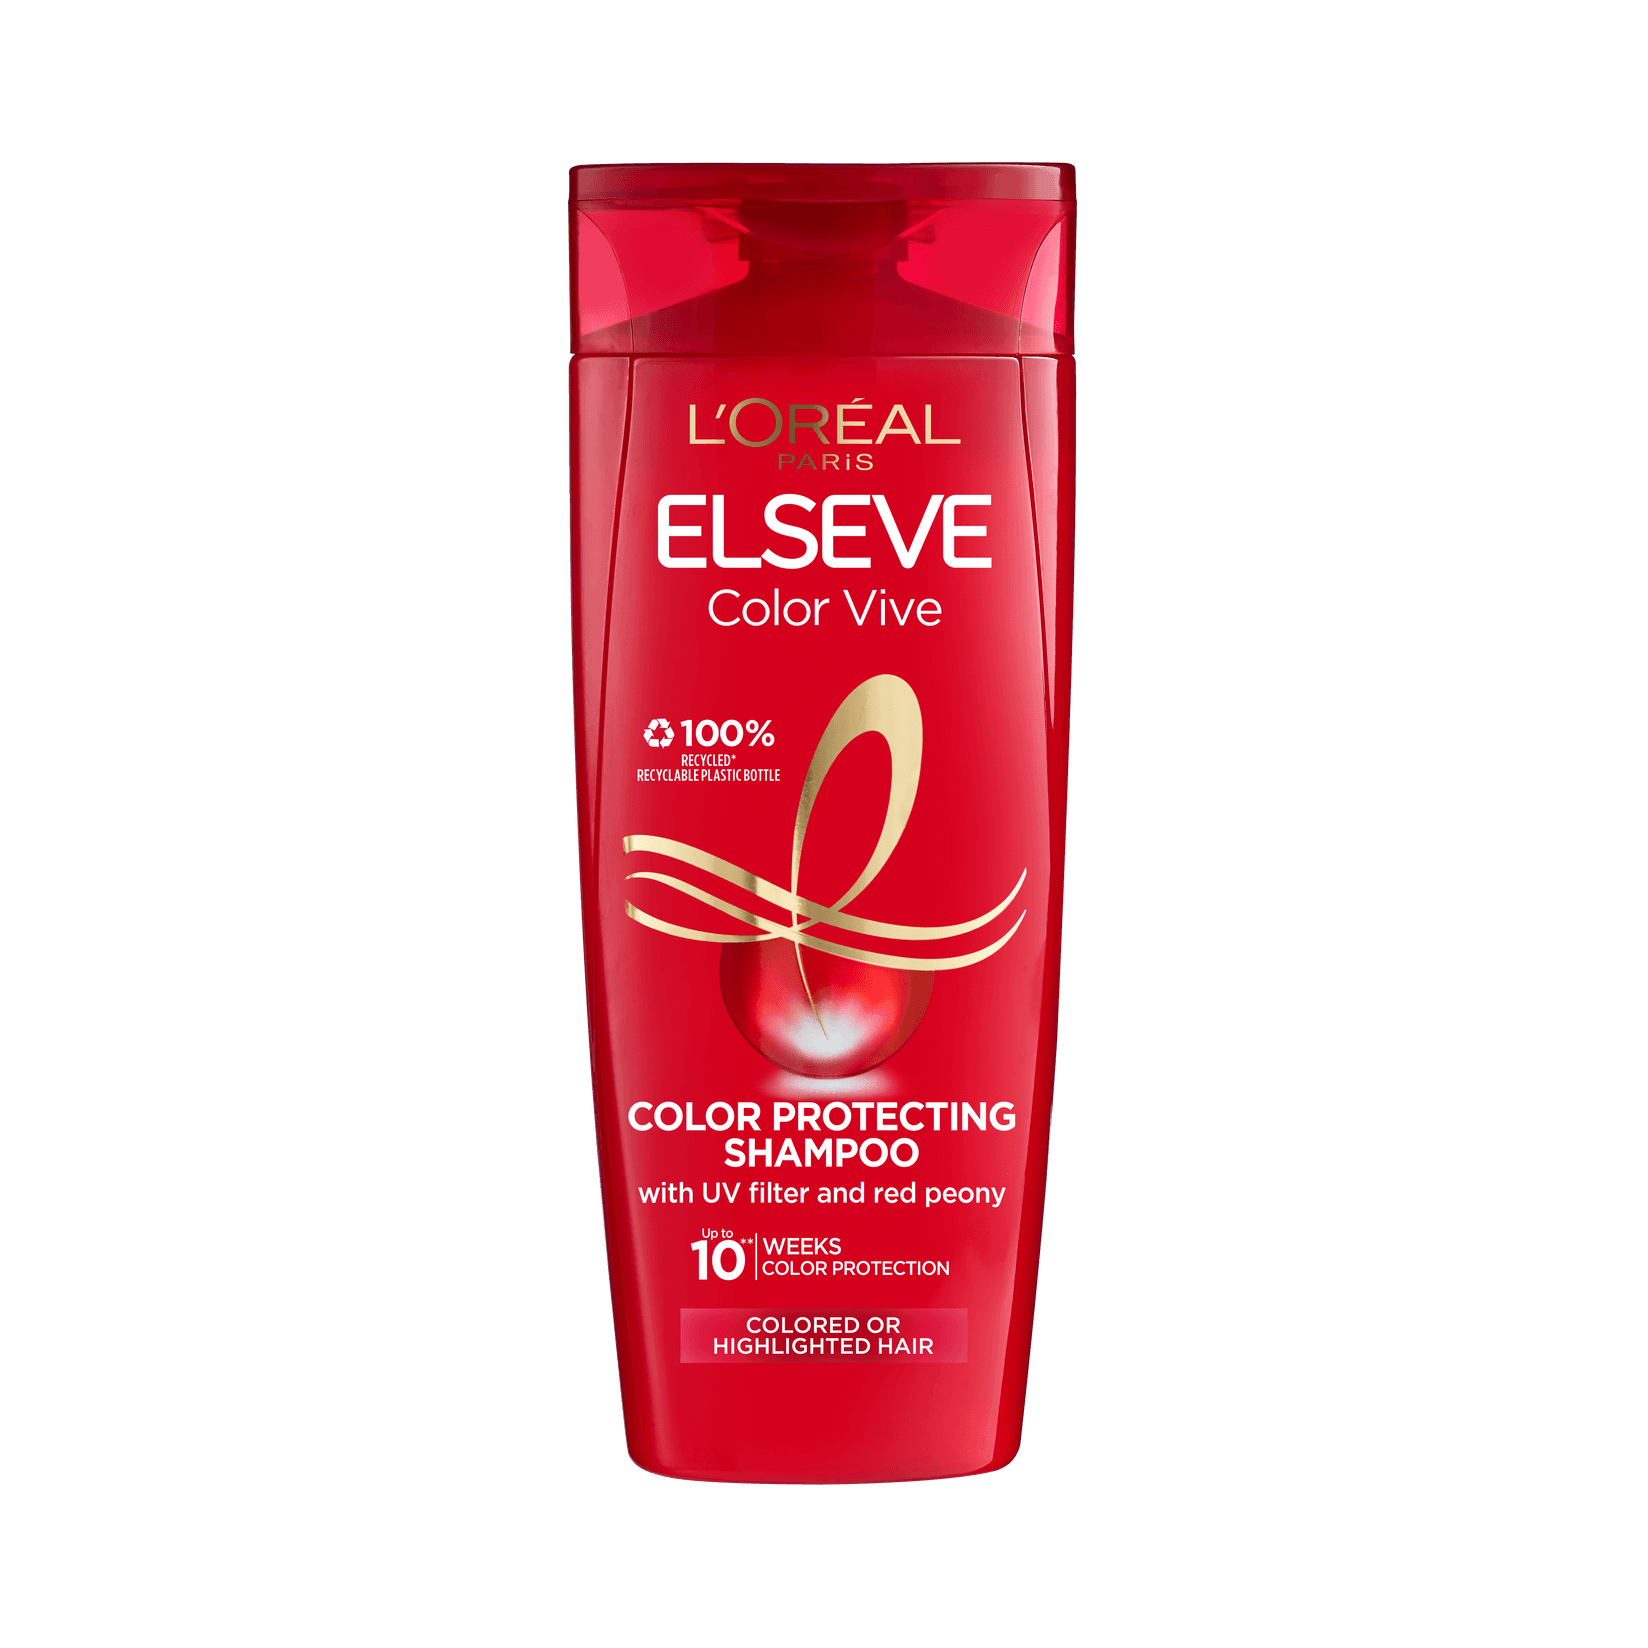 L'OREAL PARIS Elseve Color-Vive шампон за обоена коса 250мл.